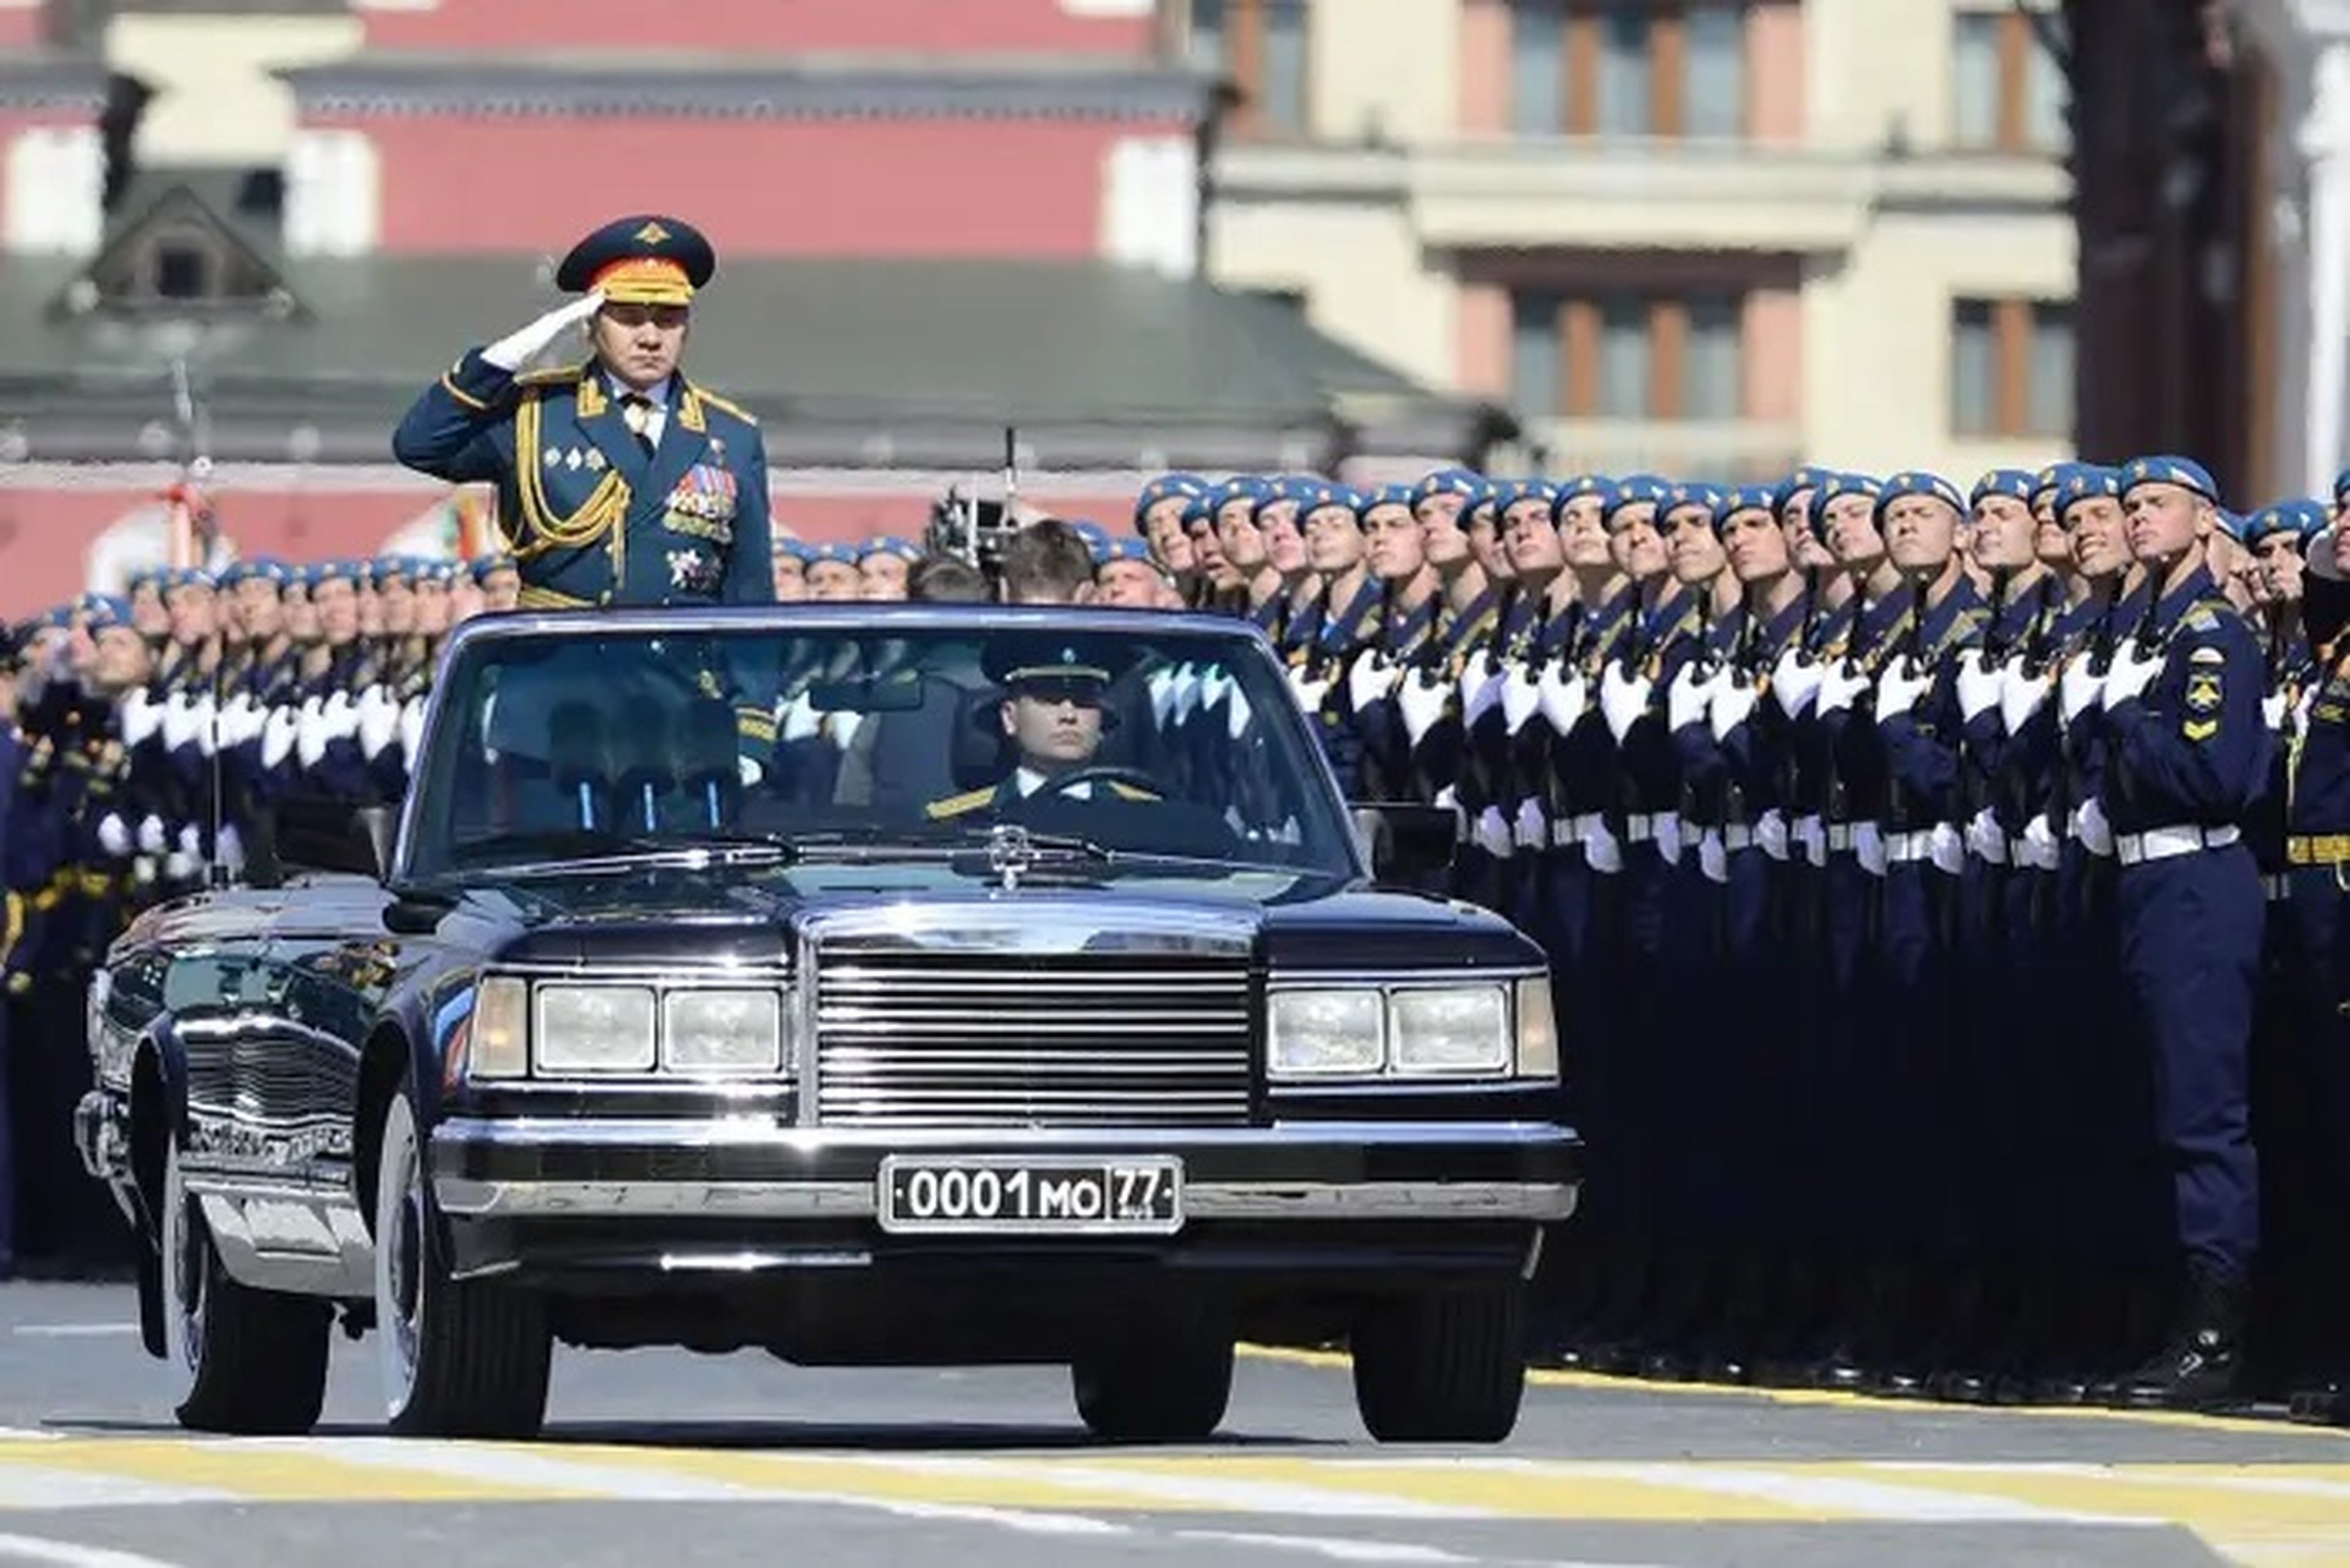 El ministro de Defensa ruso, Sergei Shoigu, saluda a los soldados y participantes durante un desfile militar en Moscú (Rusia), el 9 de mayo de 2015.